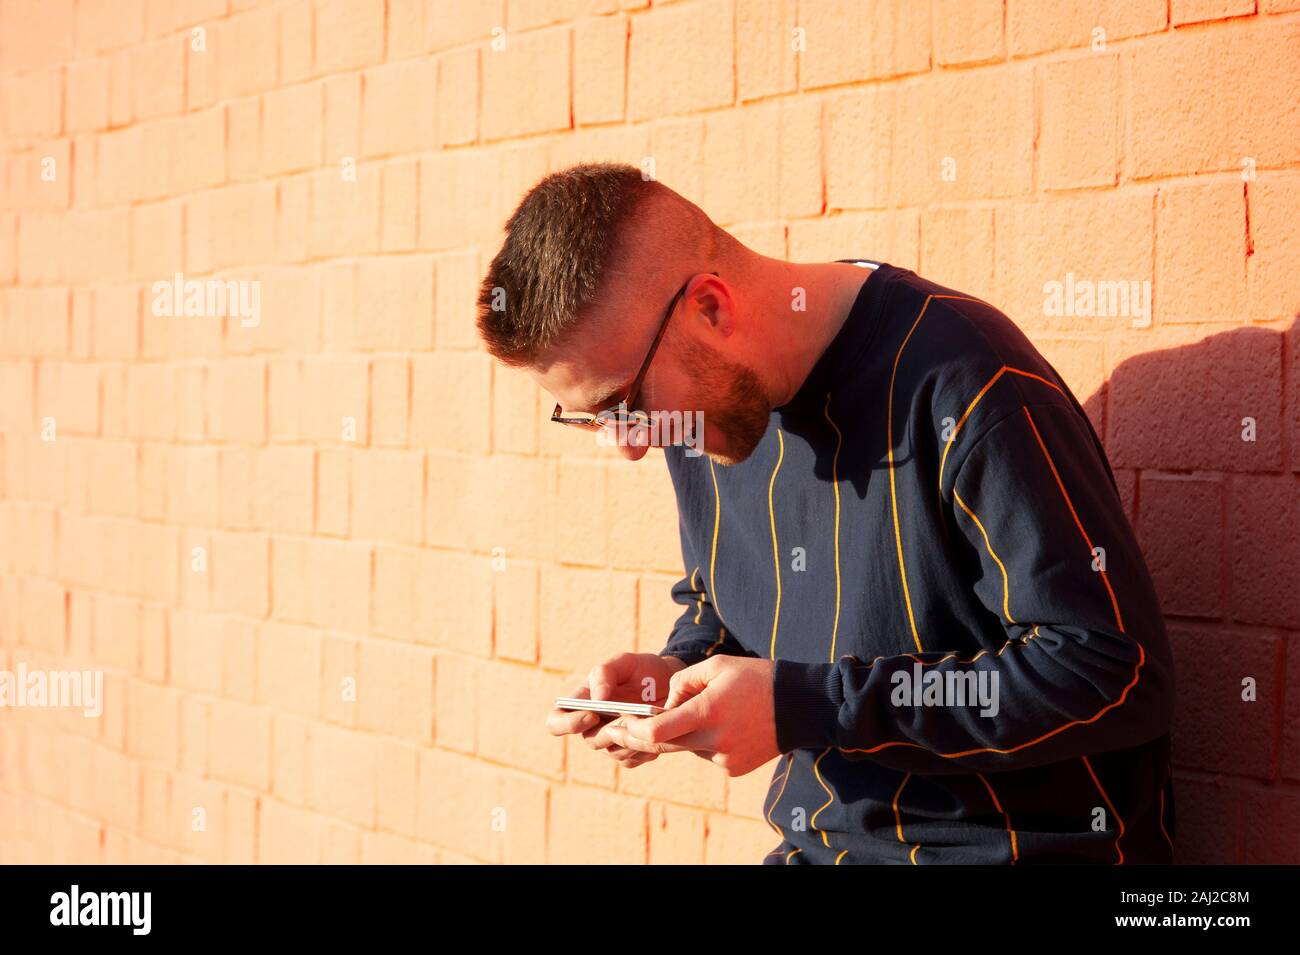 Guy smiling positive dans casualwear avec téléphone mobile. Young caucasian man standing at outdoor mur rouge et voir des vidéos drôles dans son appareil. Loisirs, fu Banque D'Images